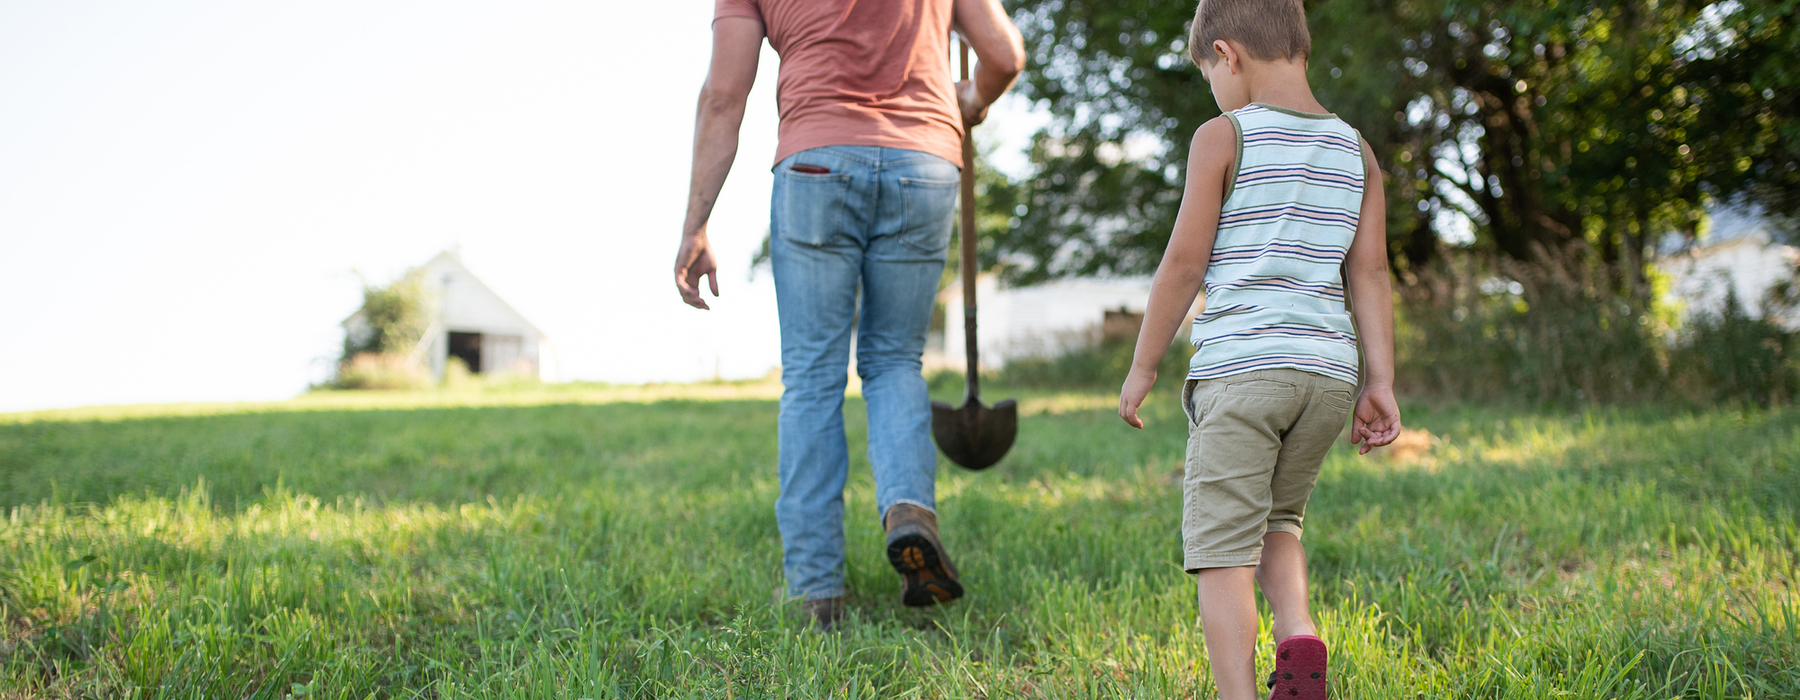 Un home amb texans, camisa de préssec, amb una pala camina per una pastura d'herba seguit d'un nen jove amb pantalons curts i una samarreta de tirants de ratlles blanques i marrons.